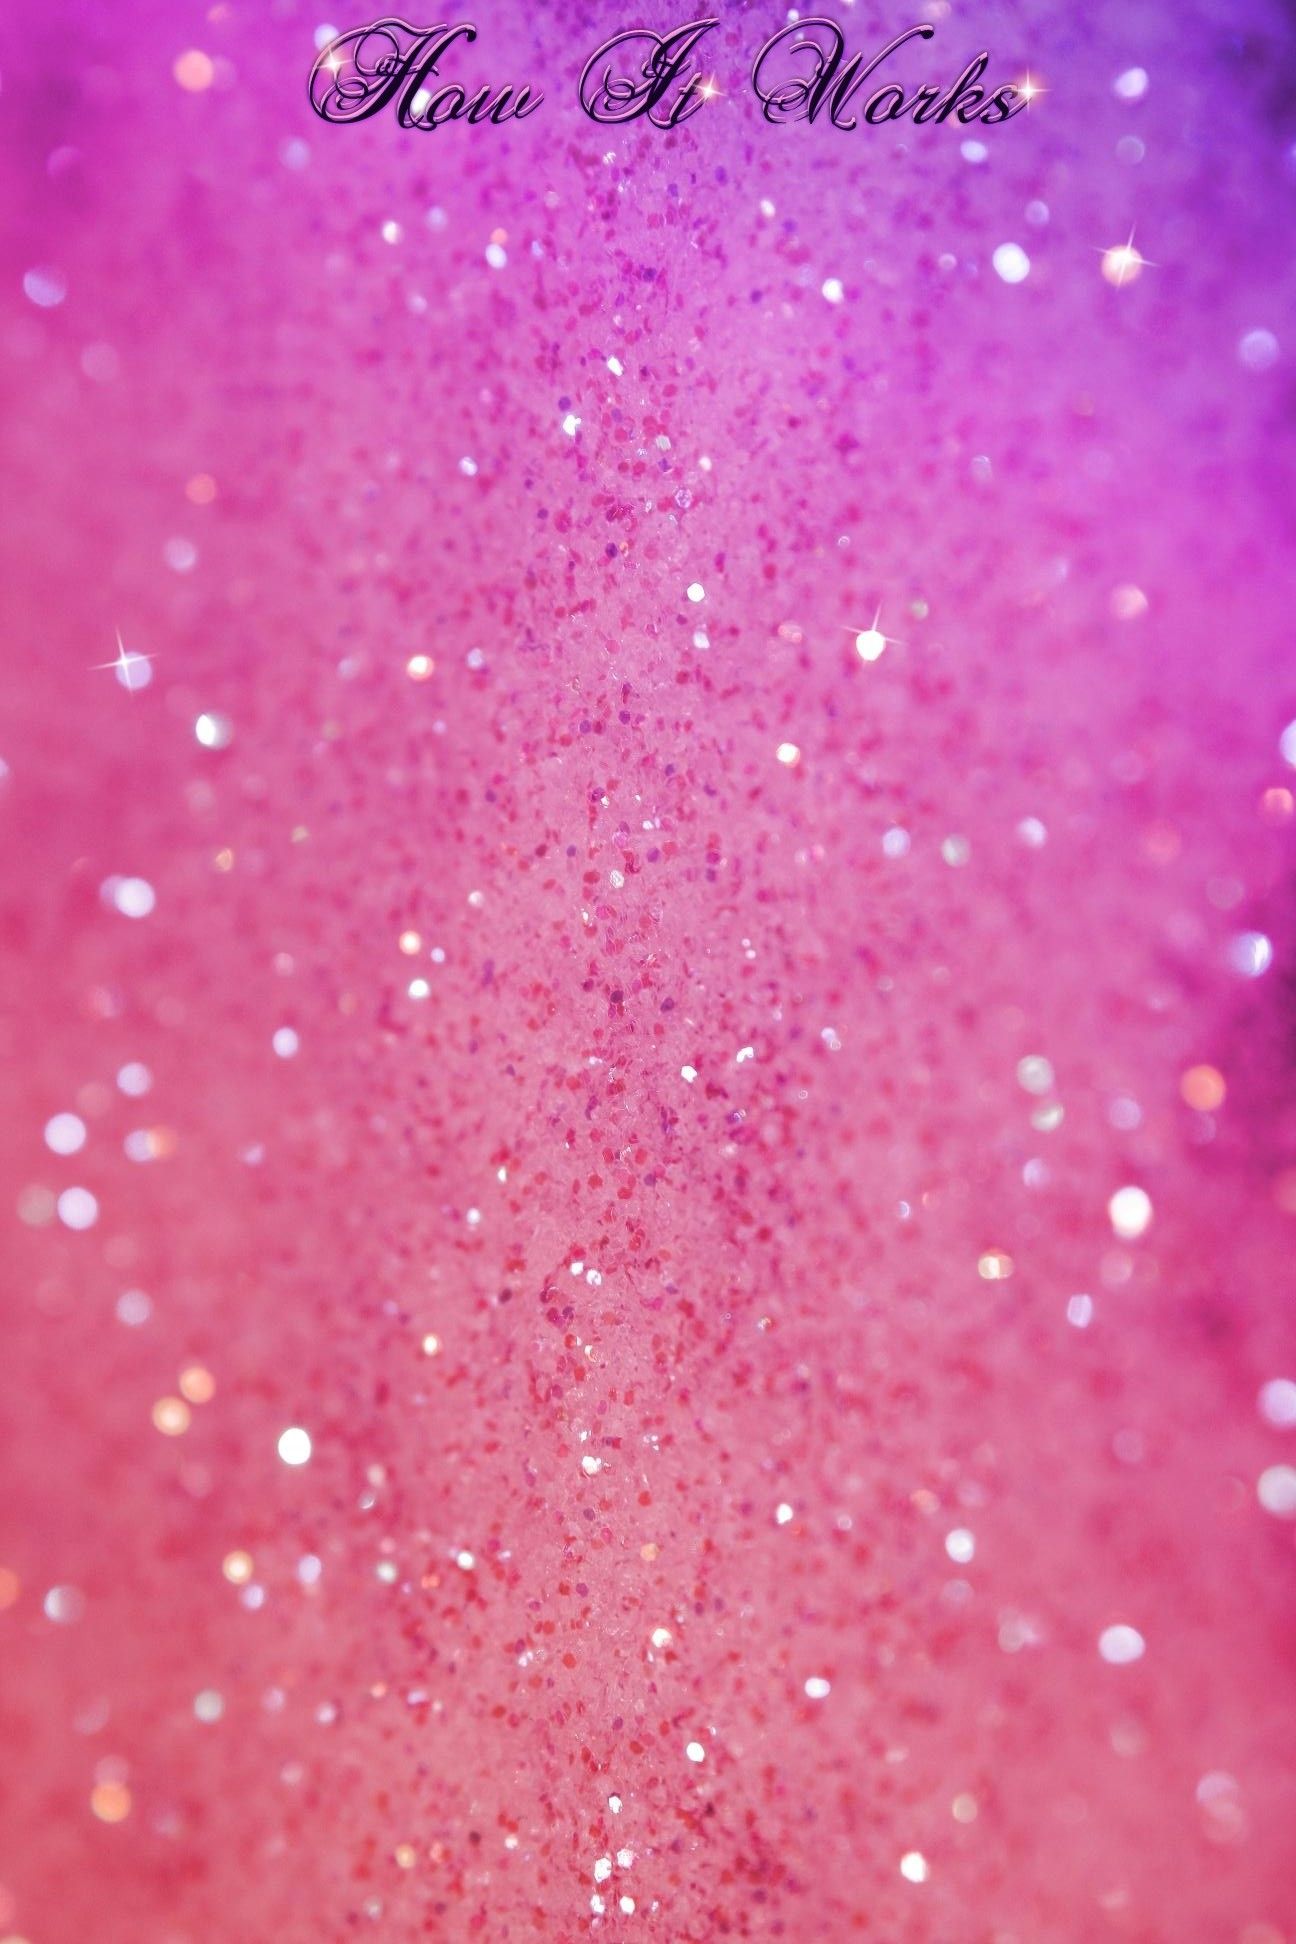 Aesthetic Glitter Wallpapers